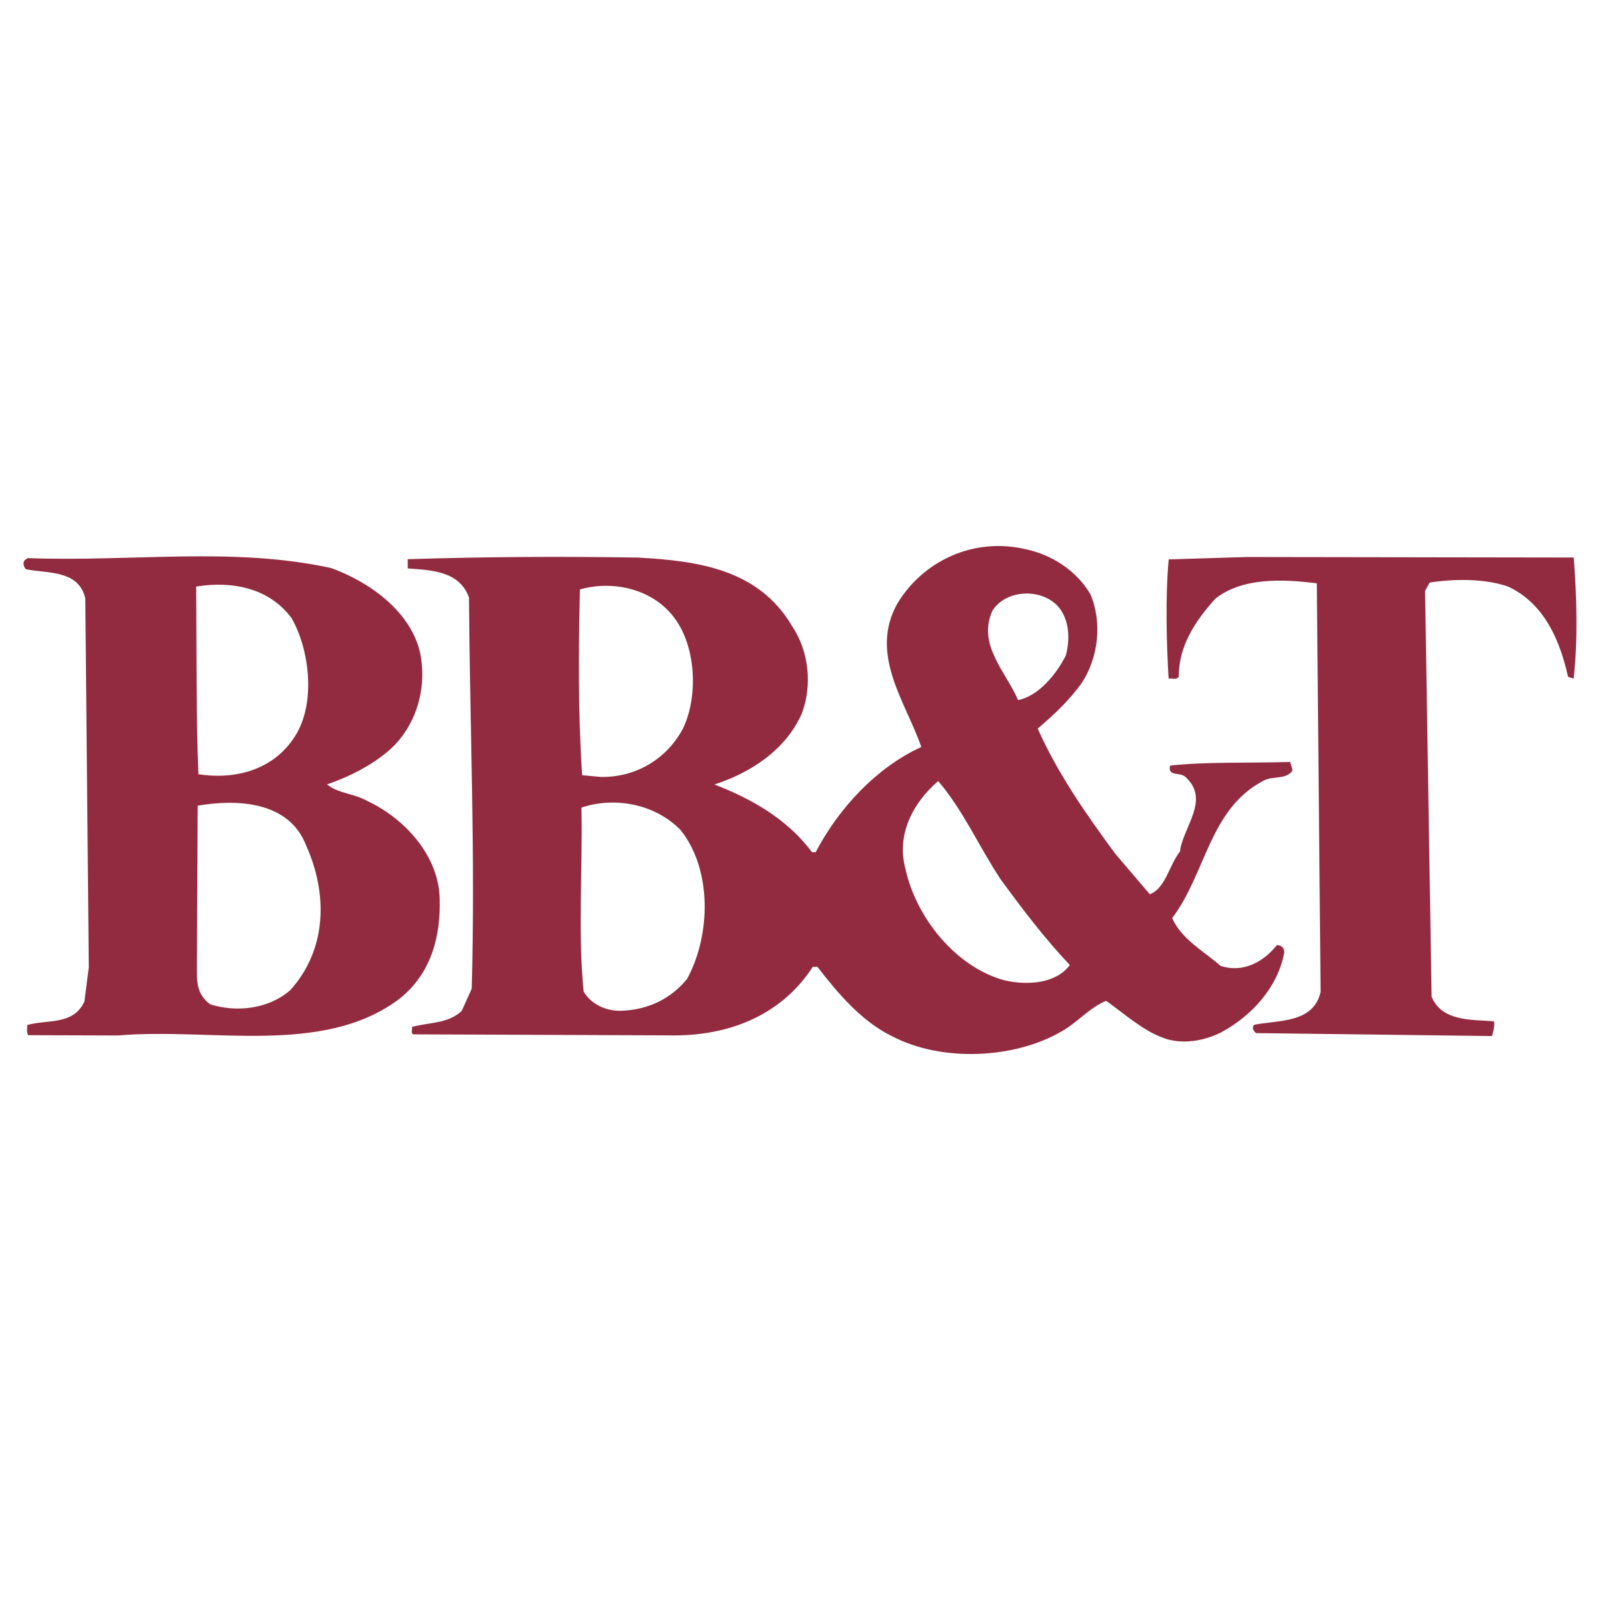 Bbt Logo